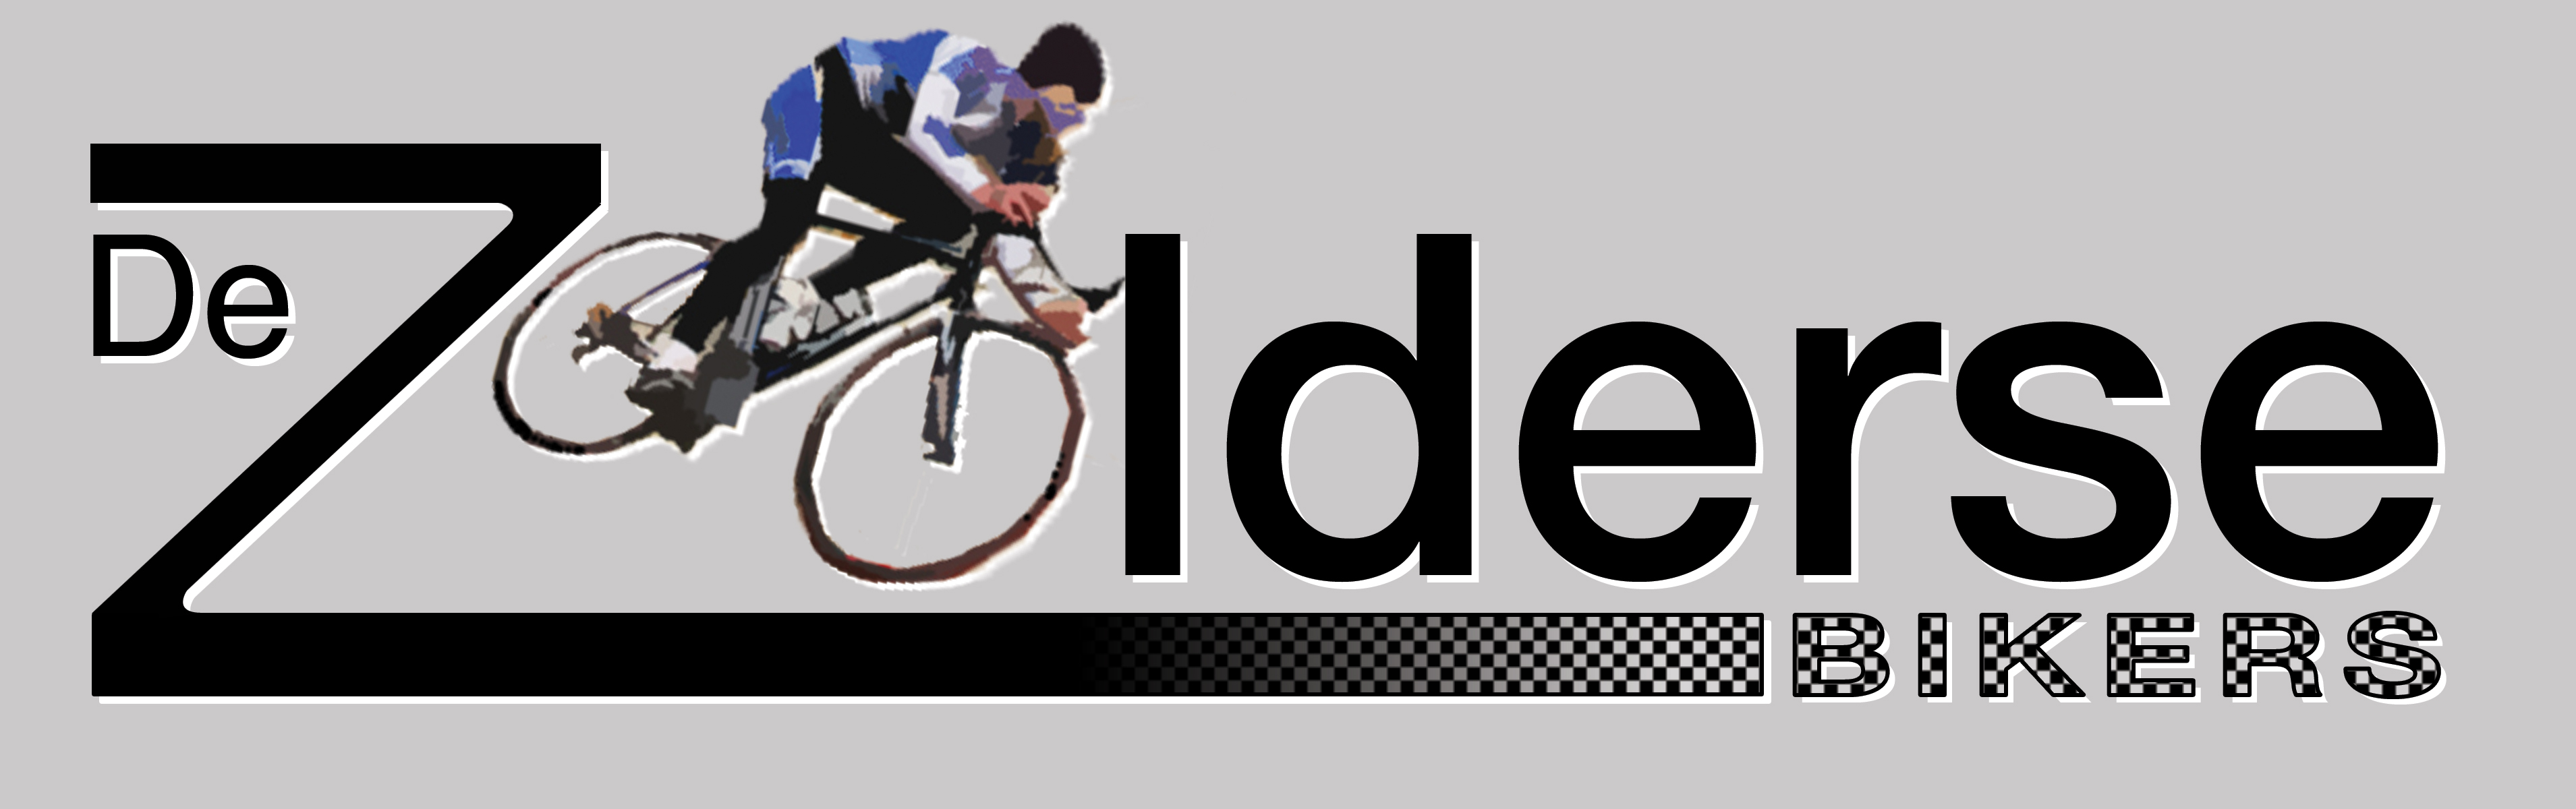 logo - De zolderse bikers 2007